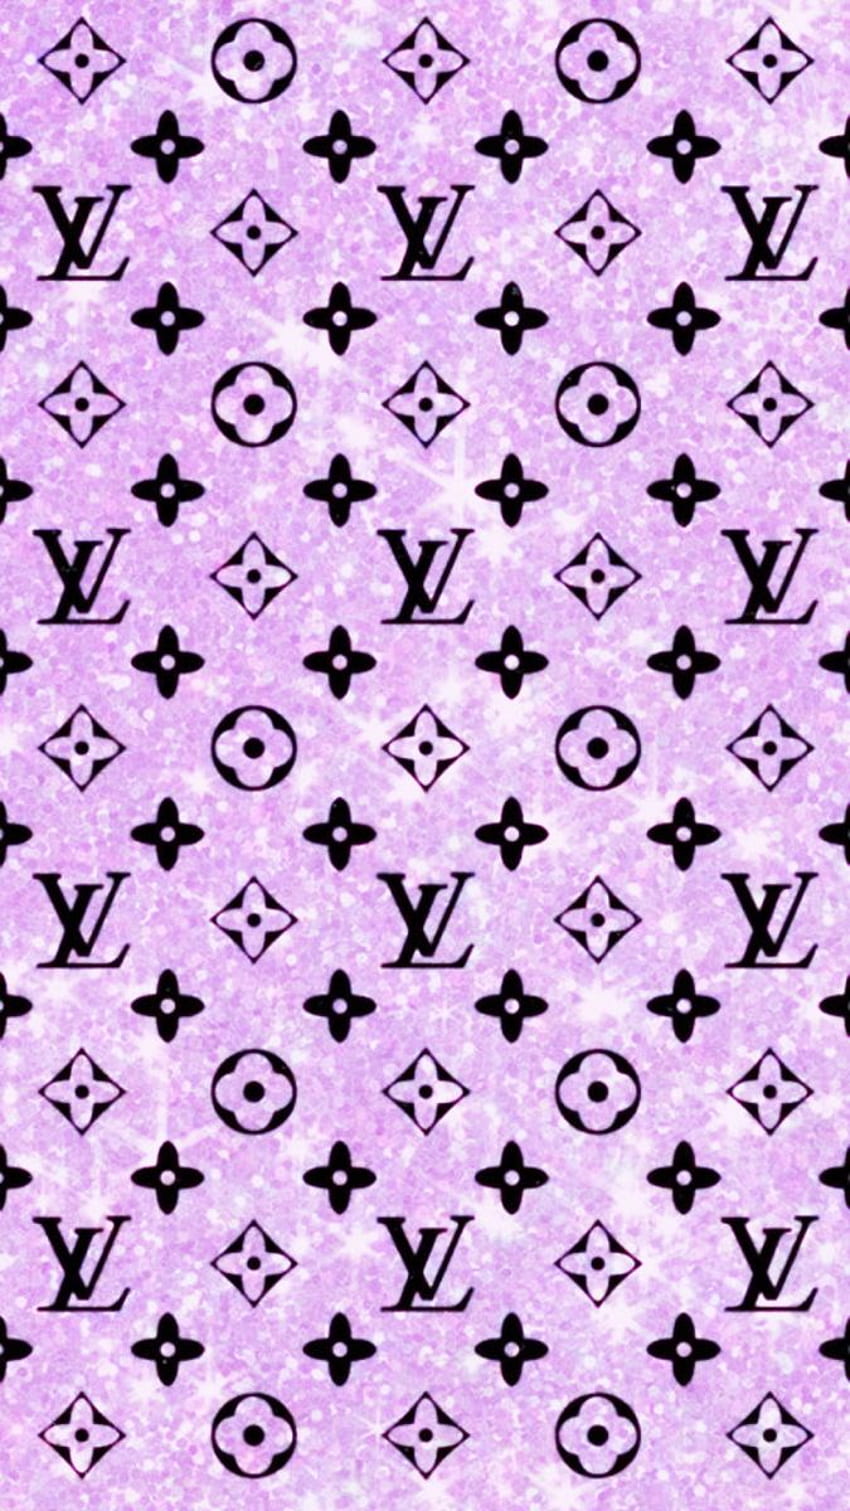 Lv wallpaper  Louis vuitton iphone wallpaper, Pink wallpaper